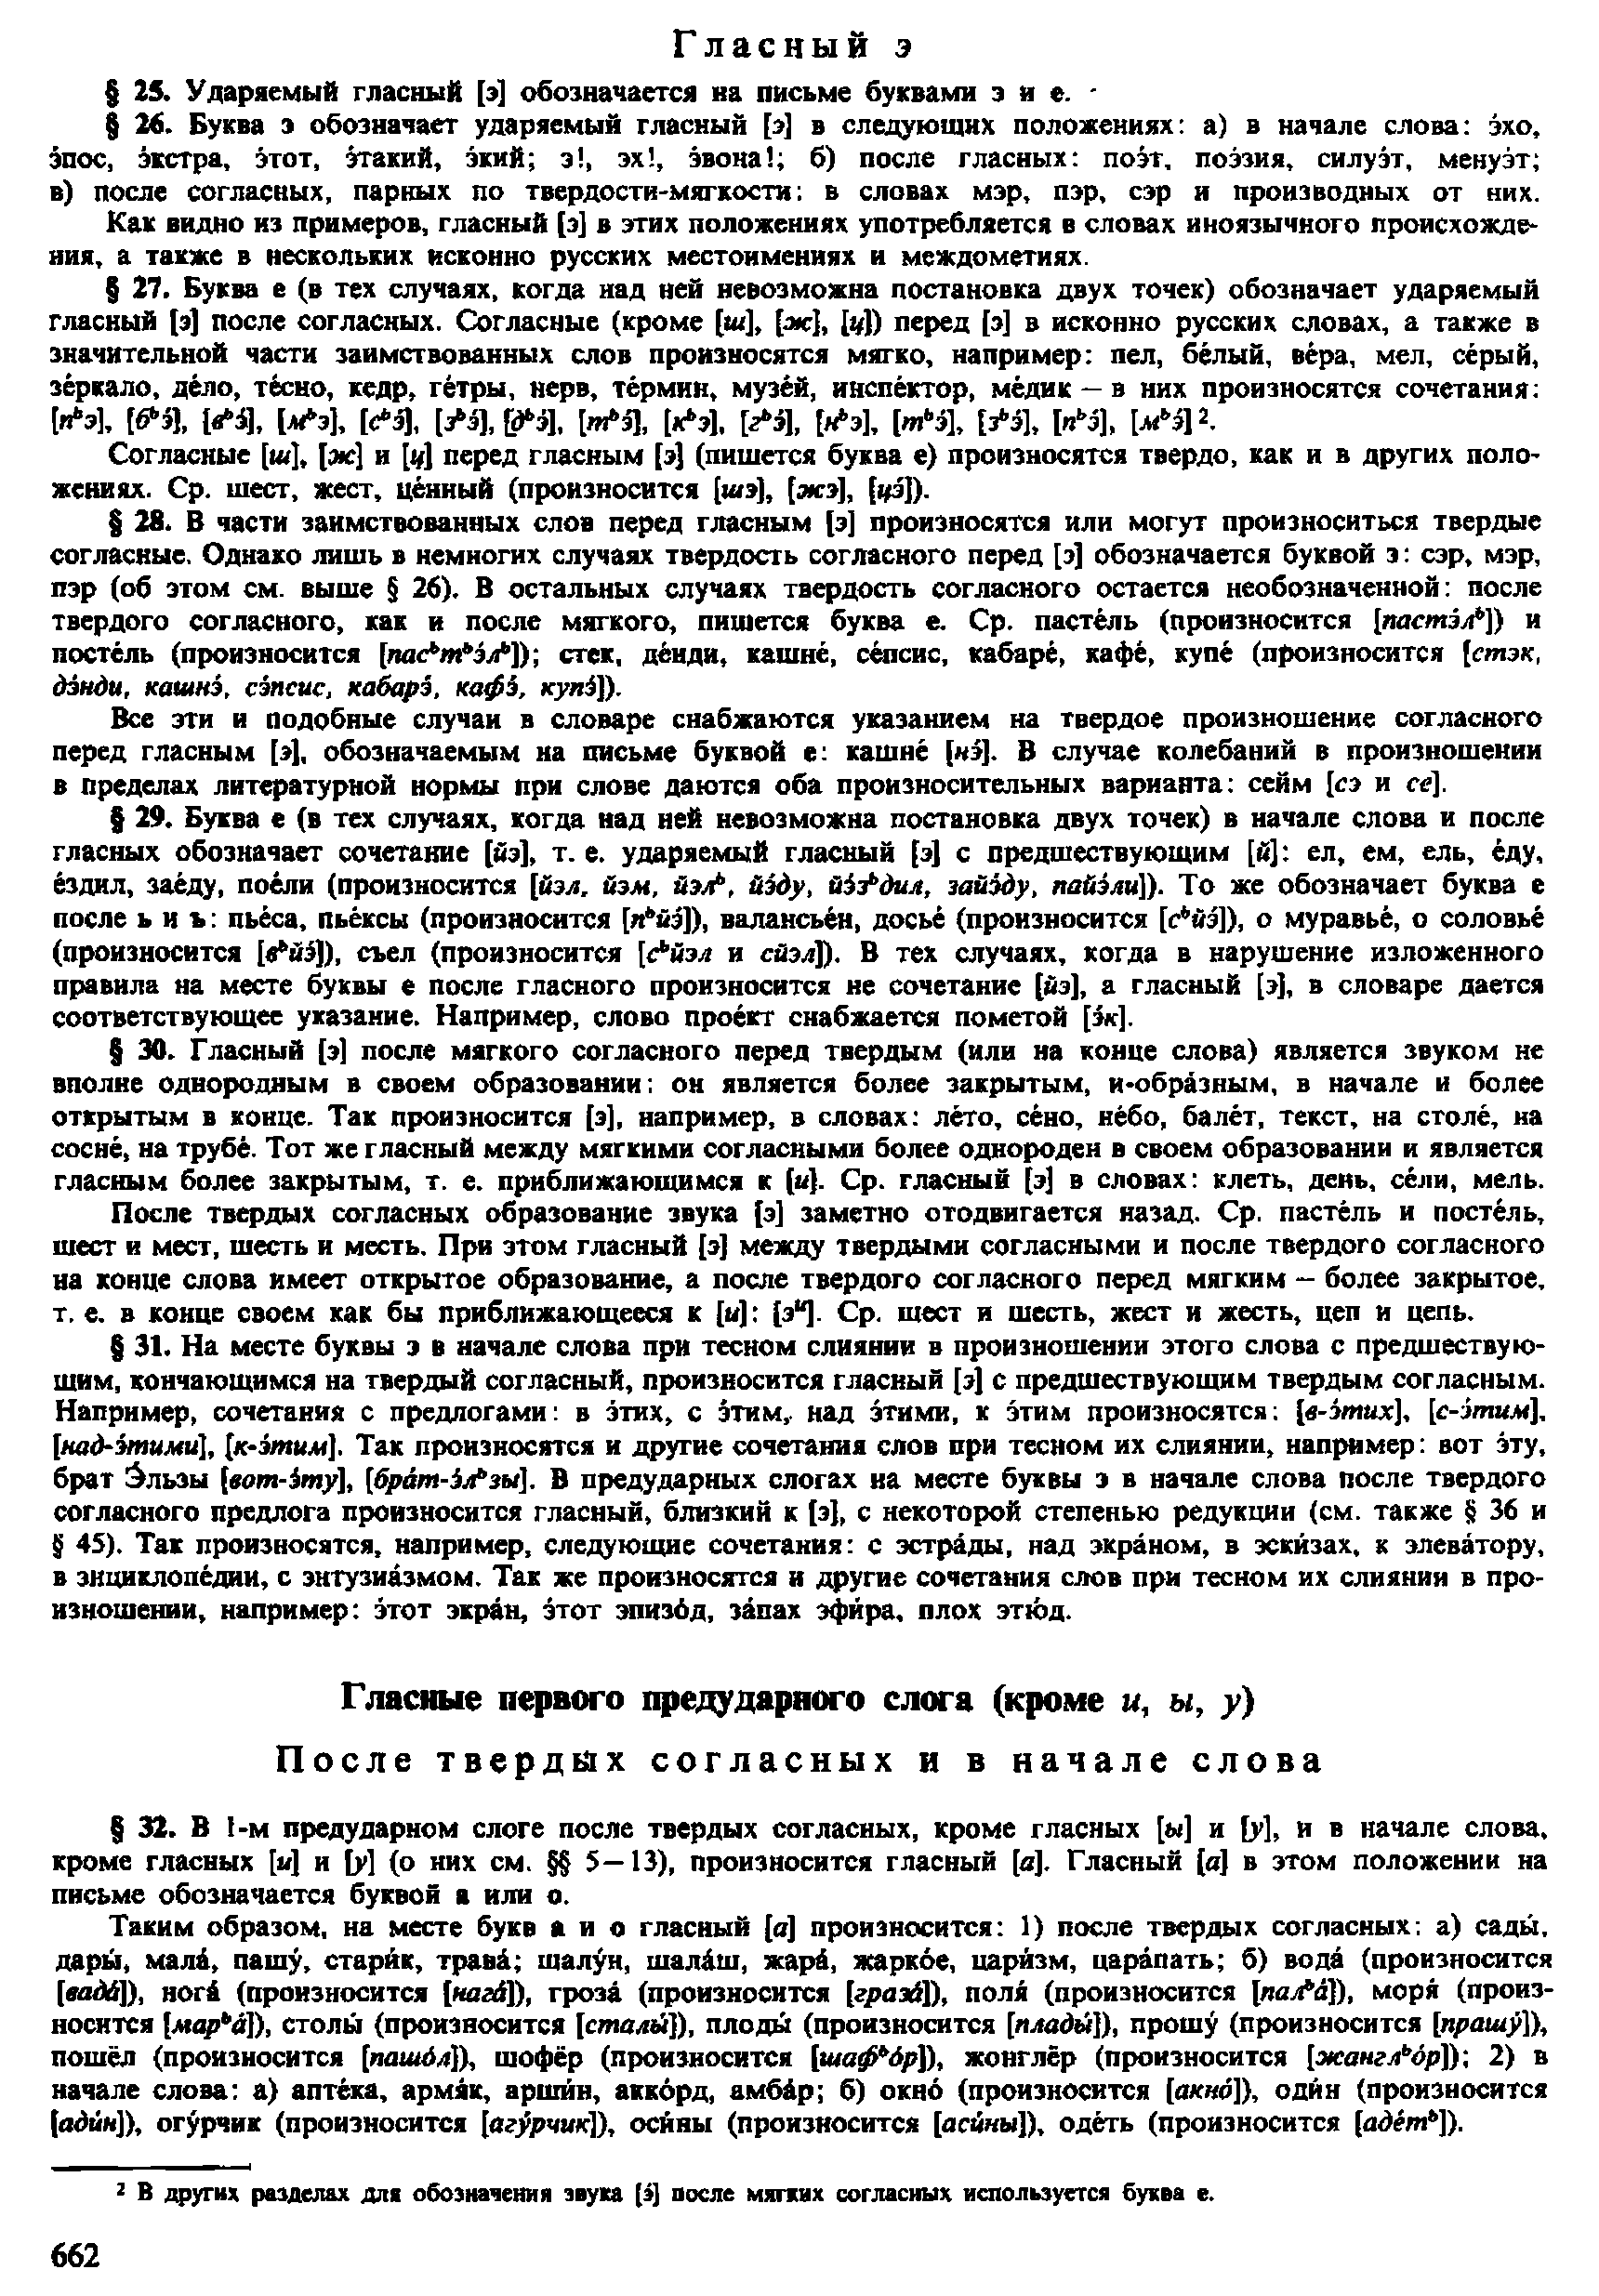 Фотокопия pdf / скан страницы 660 орфоэпического словаря под редакцией Аванесова (4 издание, 1988 год)